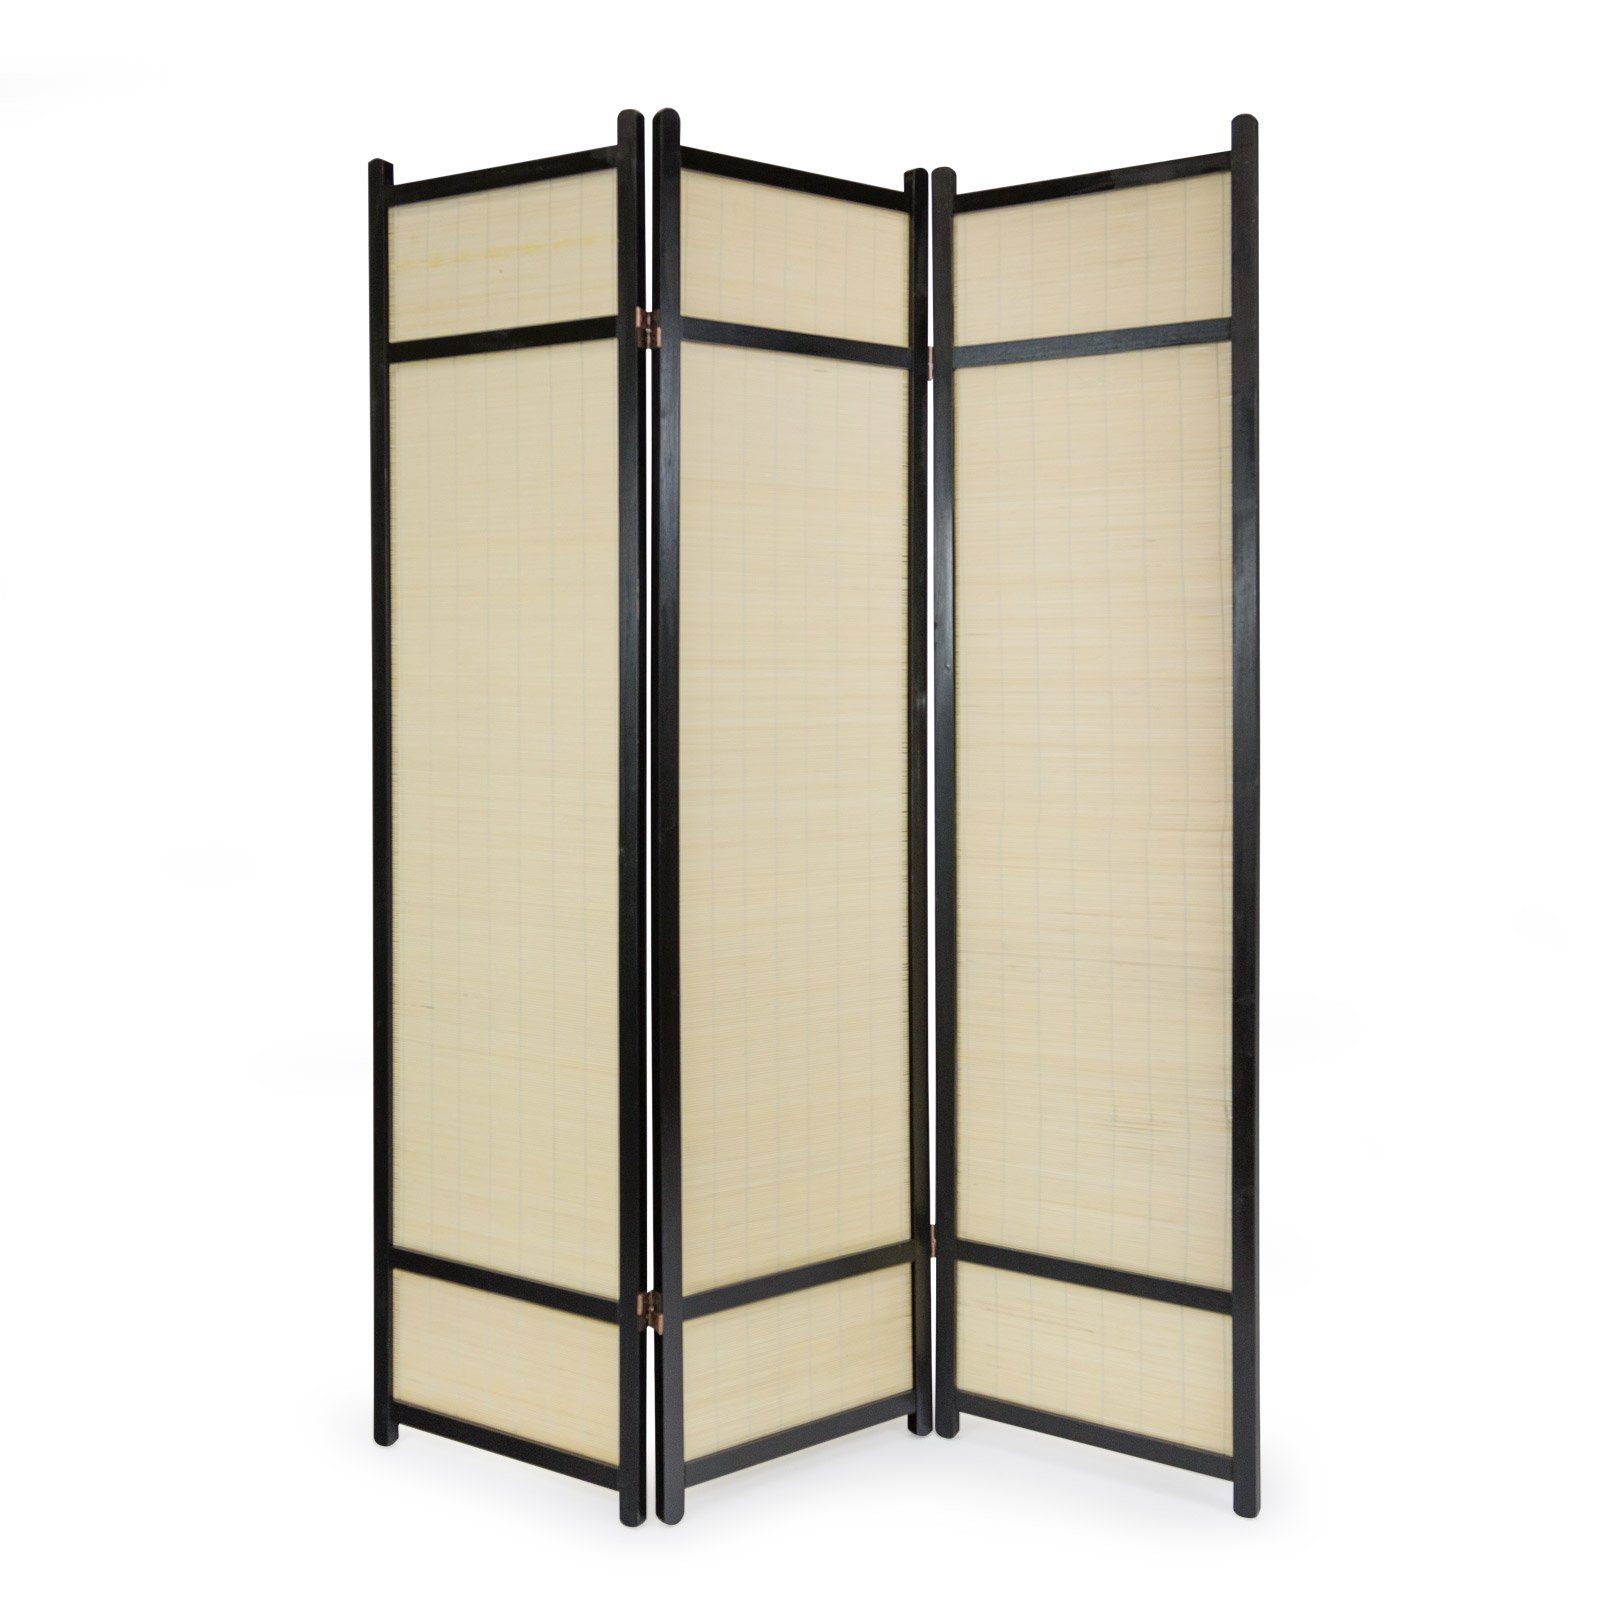 Homestyle4u Paravent Holz Paravent Raumteiler Trennwand Bambus schwarz Spanische Wand Sicht, 3-teilig